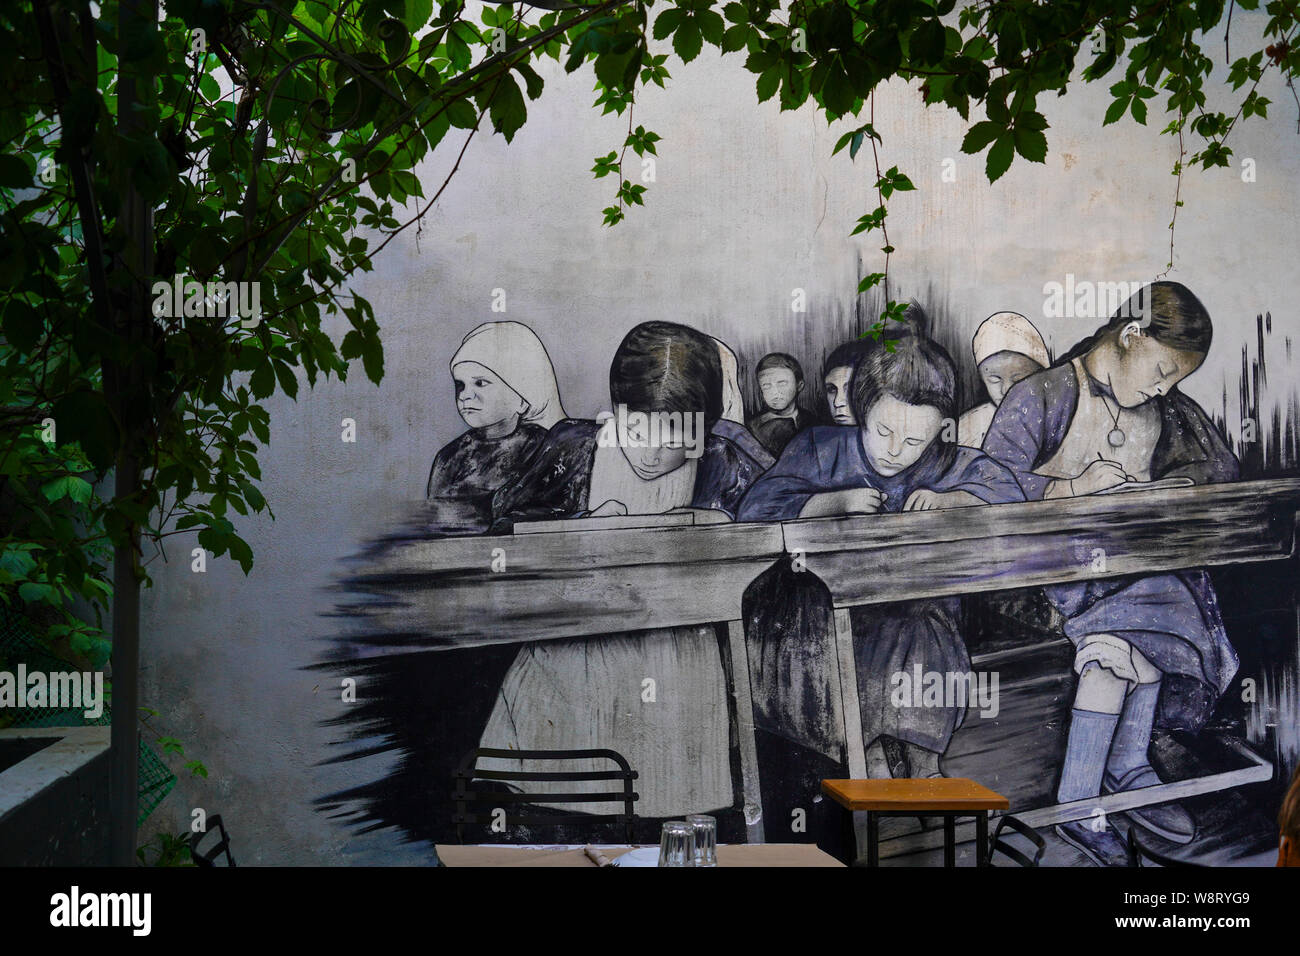 Athènes, Grèce, le Graffiti de l'école des filles dans une salle de classe d'époque sur un mur Banque D'Images